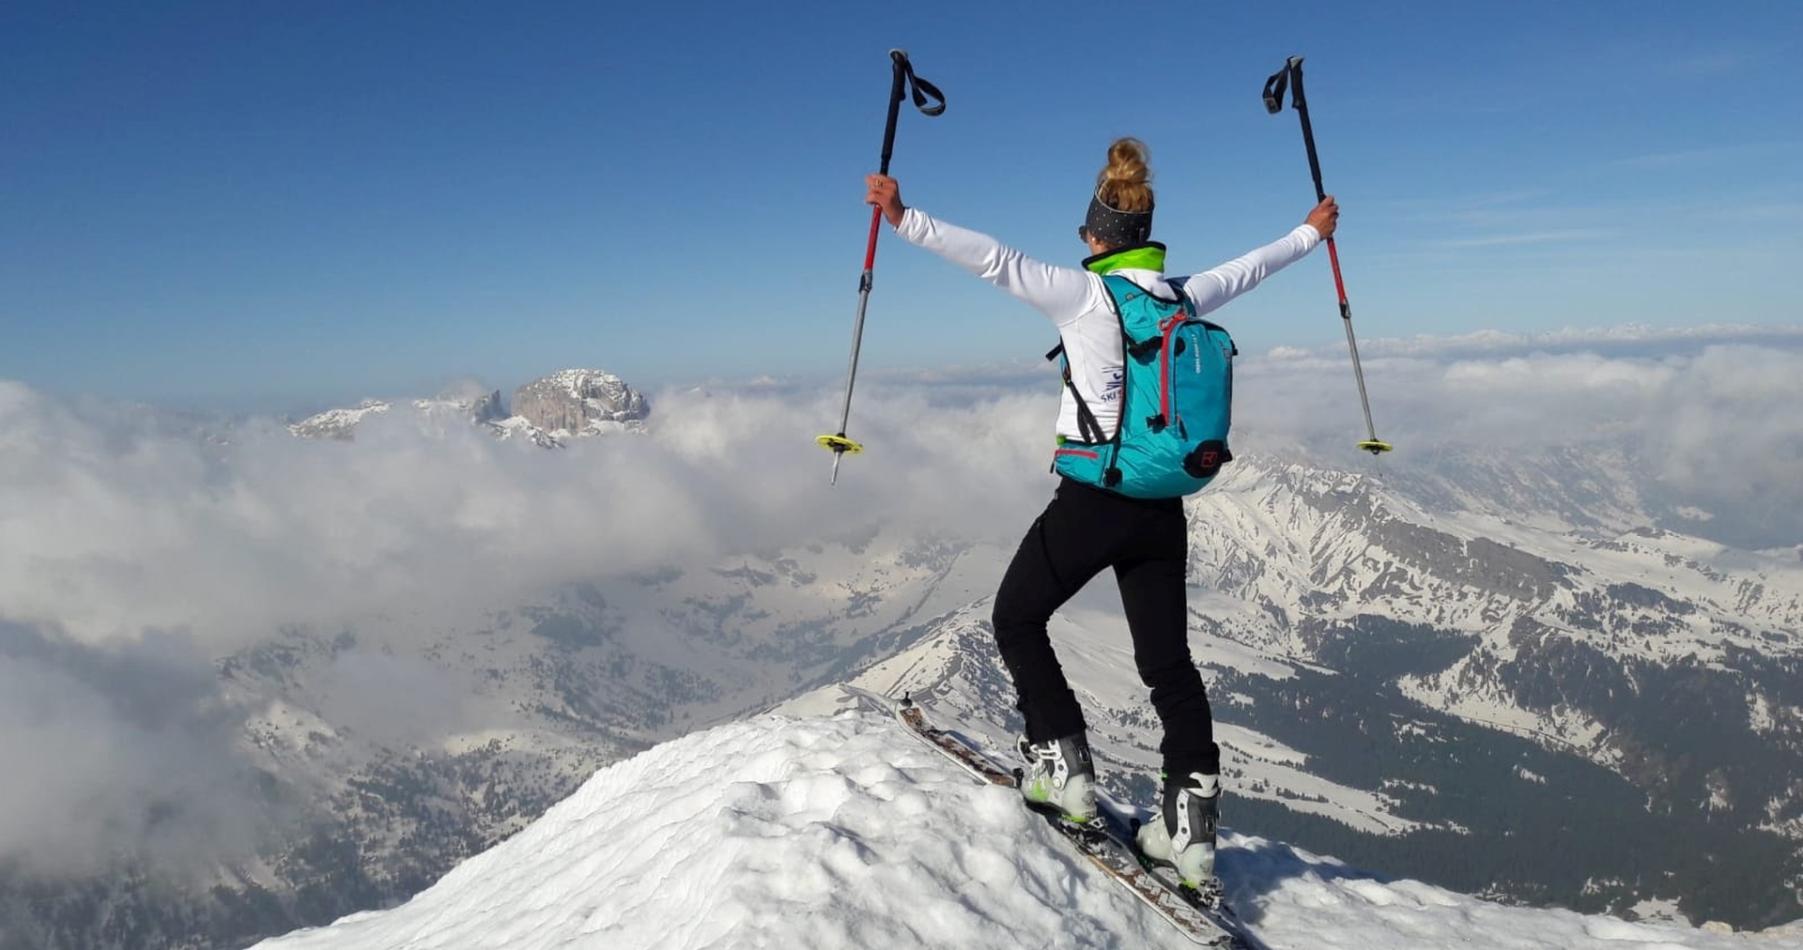 A female ski tourer enjoys the view from the mountain peak